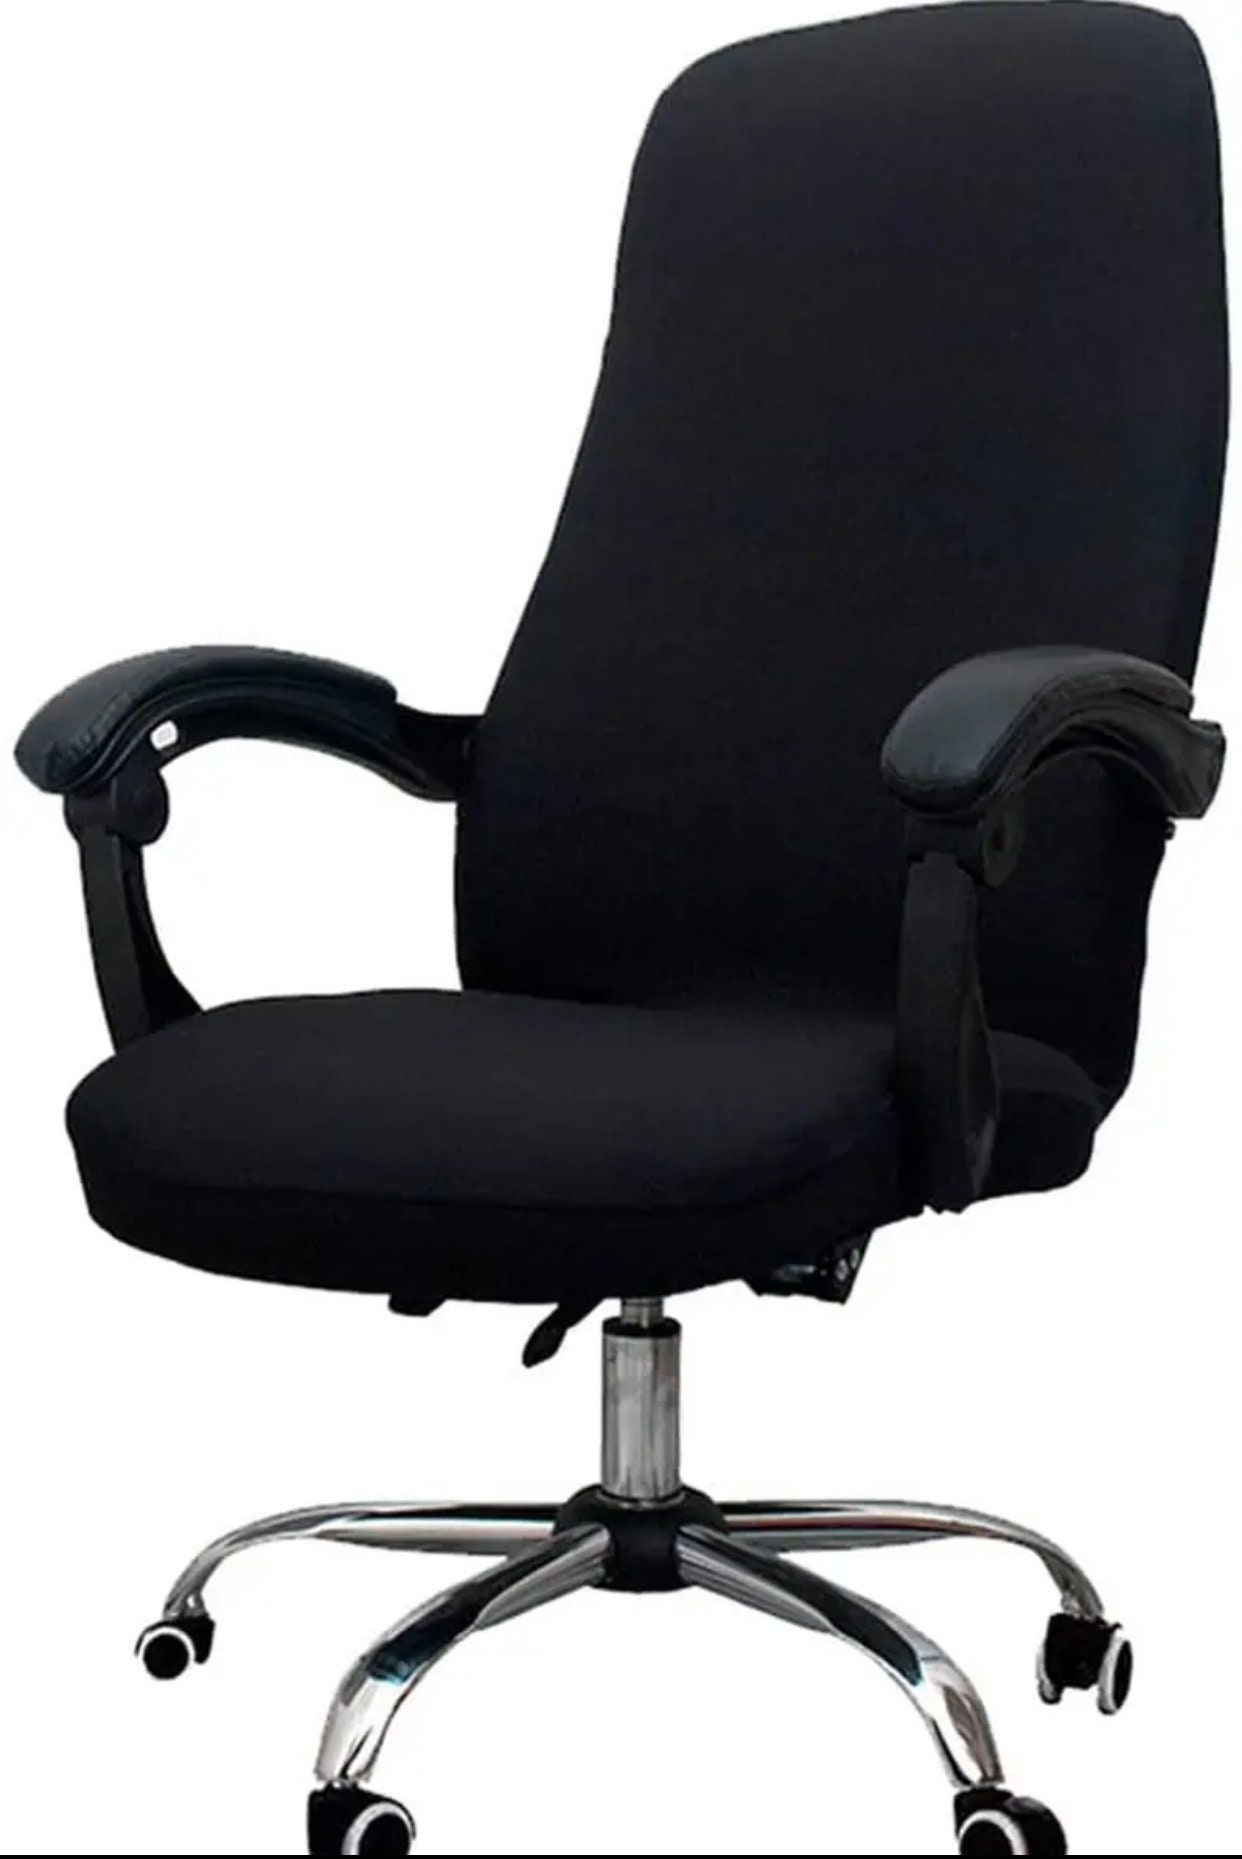 WOKEEN Armless Office Chair,Desk Chair No Wheels,Criss Cross Chair